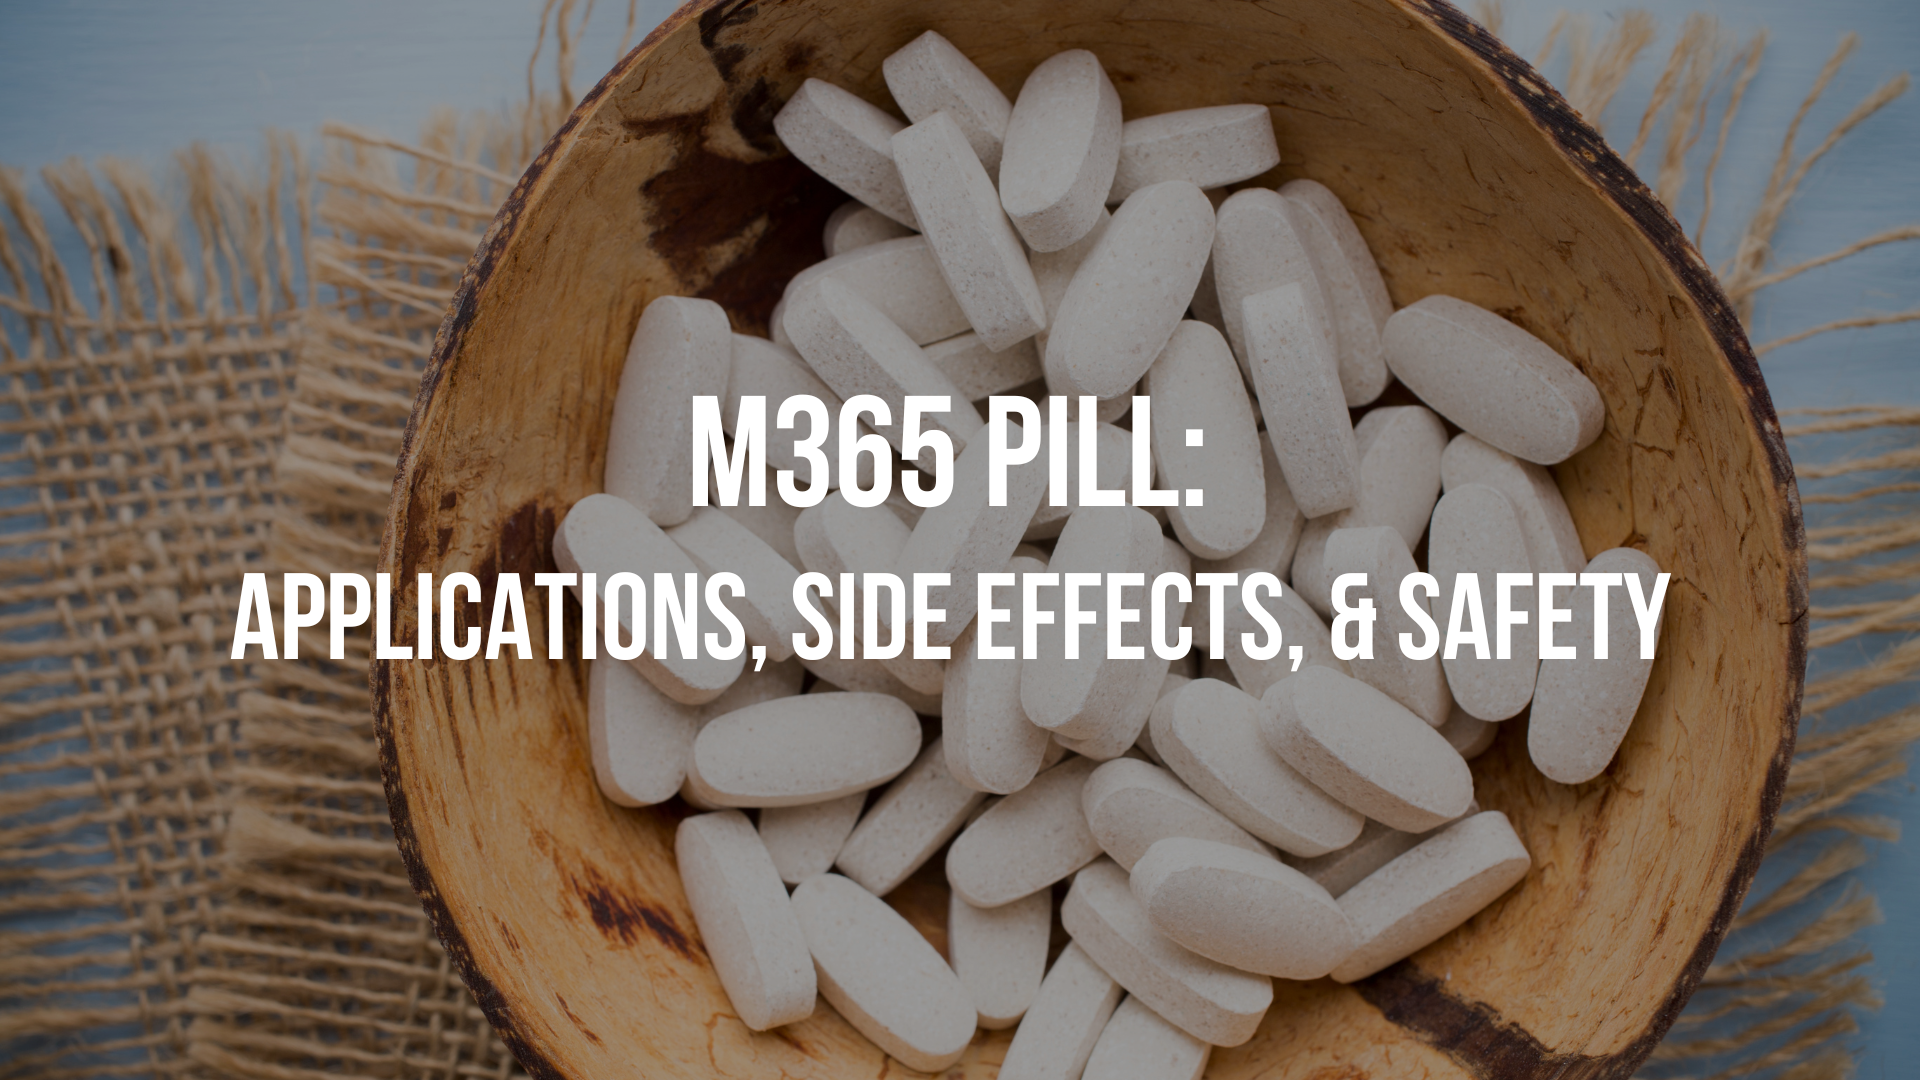 M365-pill